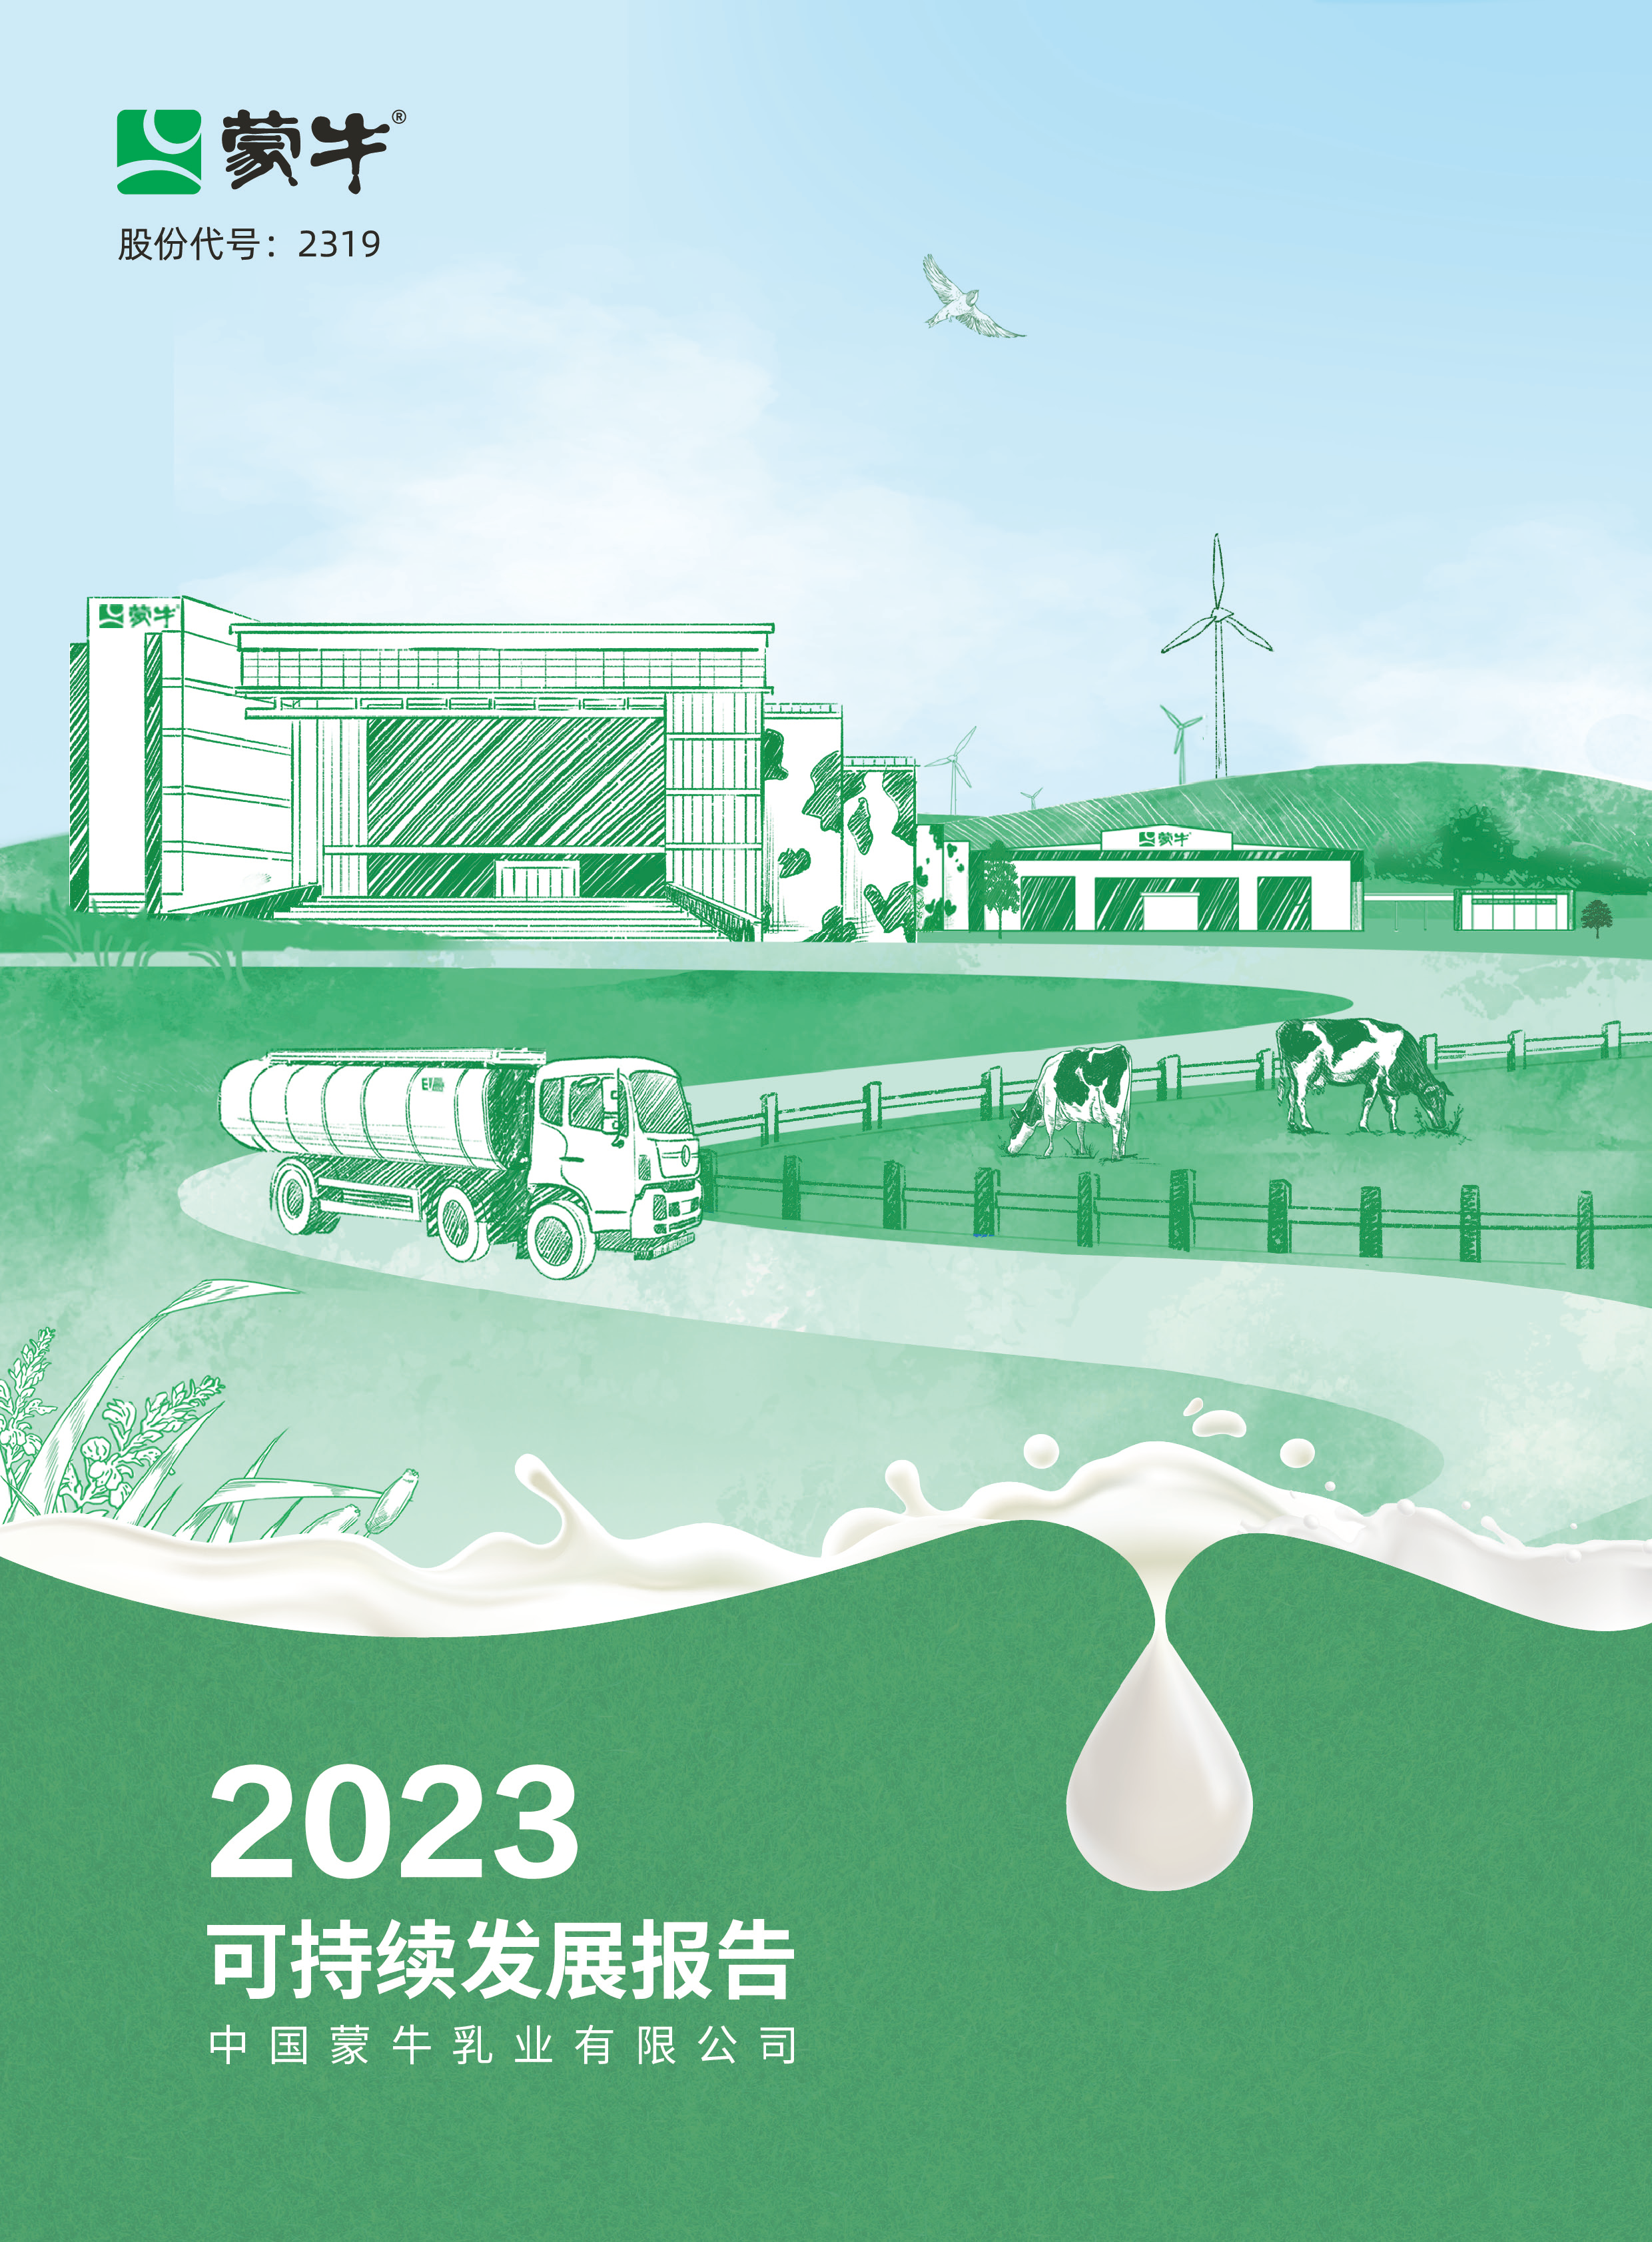 构筑绿色产业链 蒙牛可持续发展报告彰显中国乳业减碳成果